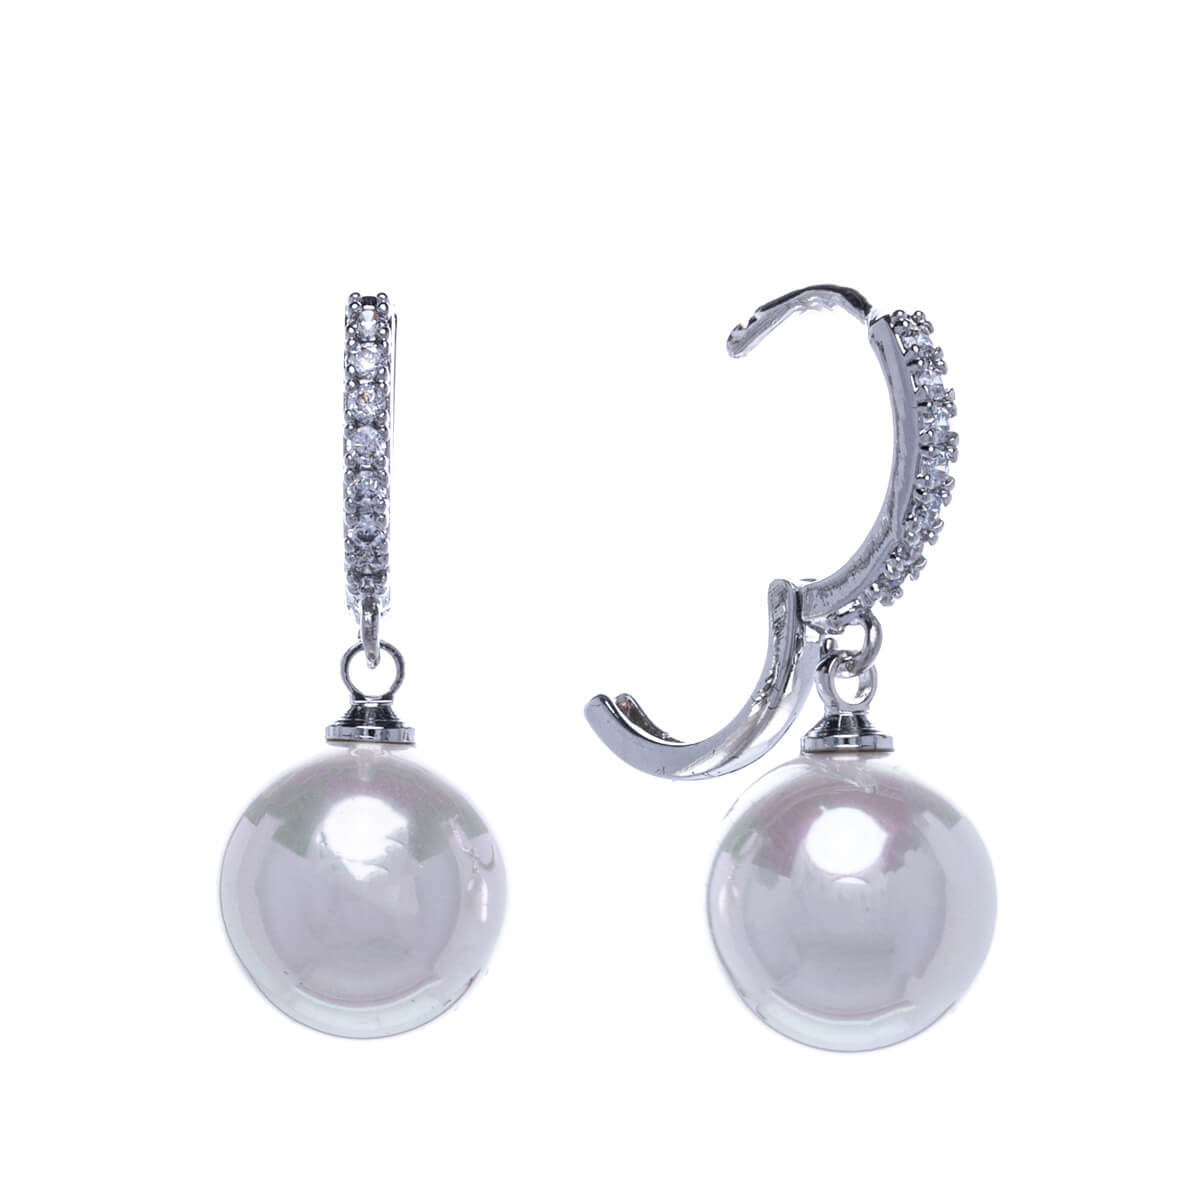 Dangling pearl earrings with zirconia earrings (12mm)